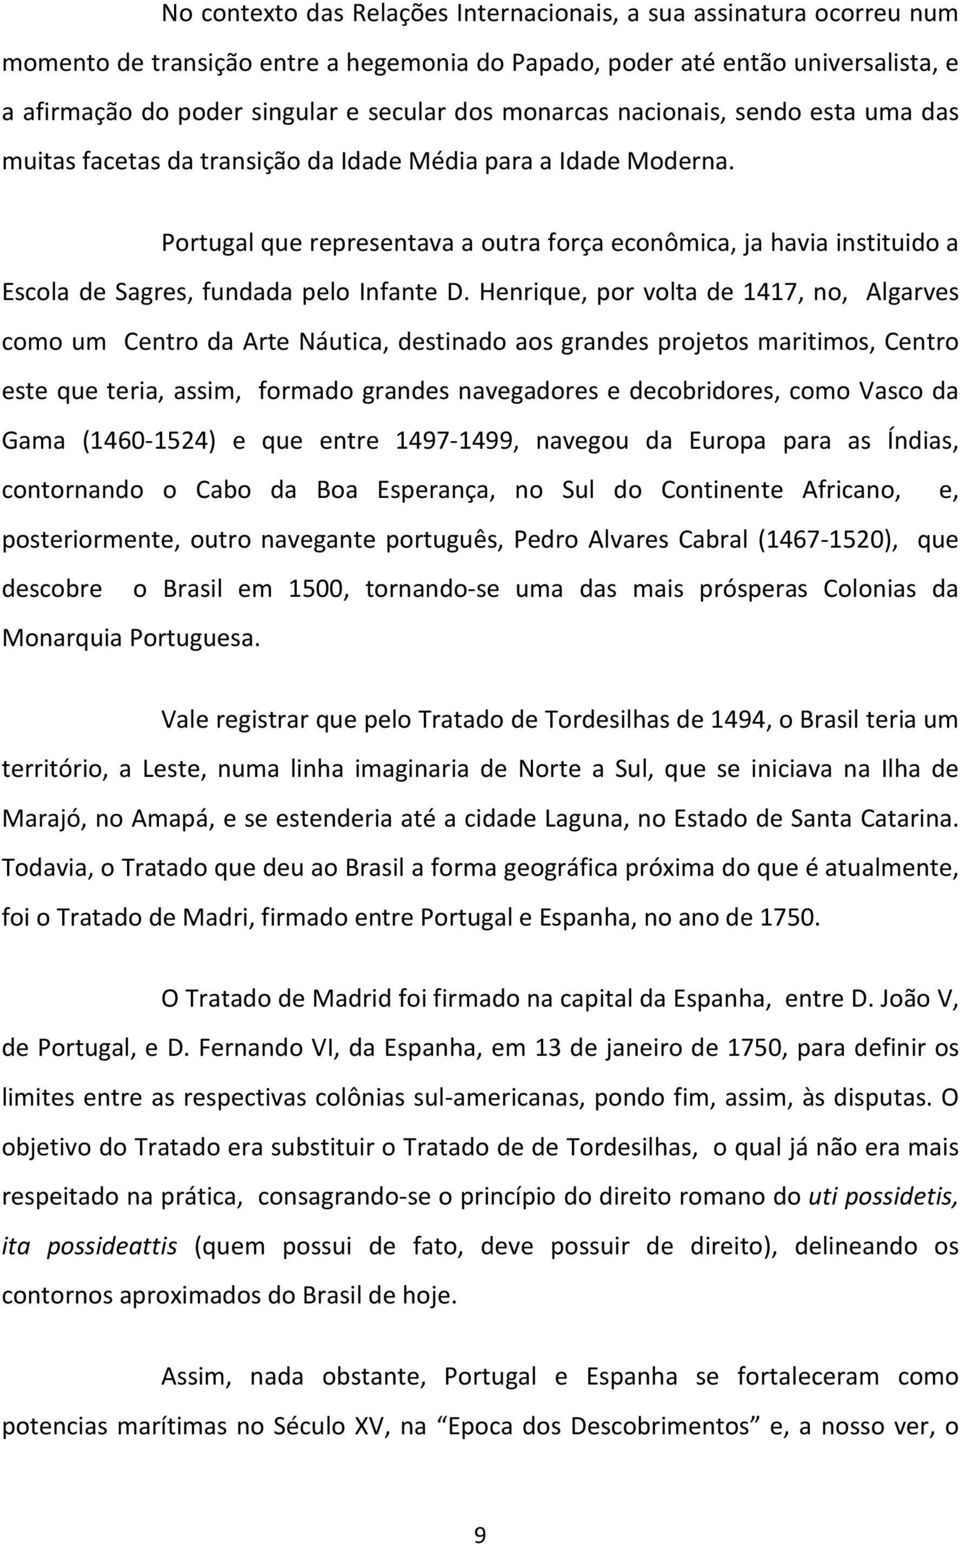 Portugal que representava a outra força econômica, ja havia instituido a Escola de Sagres, fundada pelo Infante D.